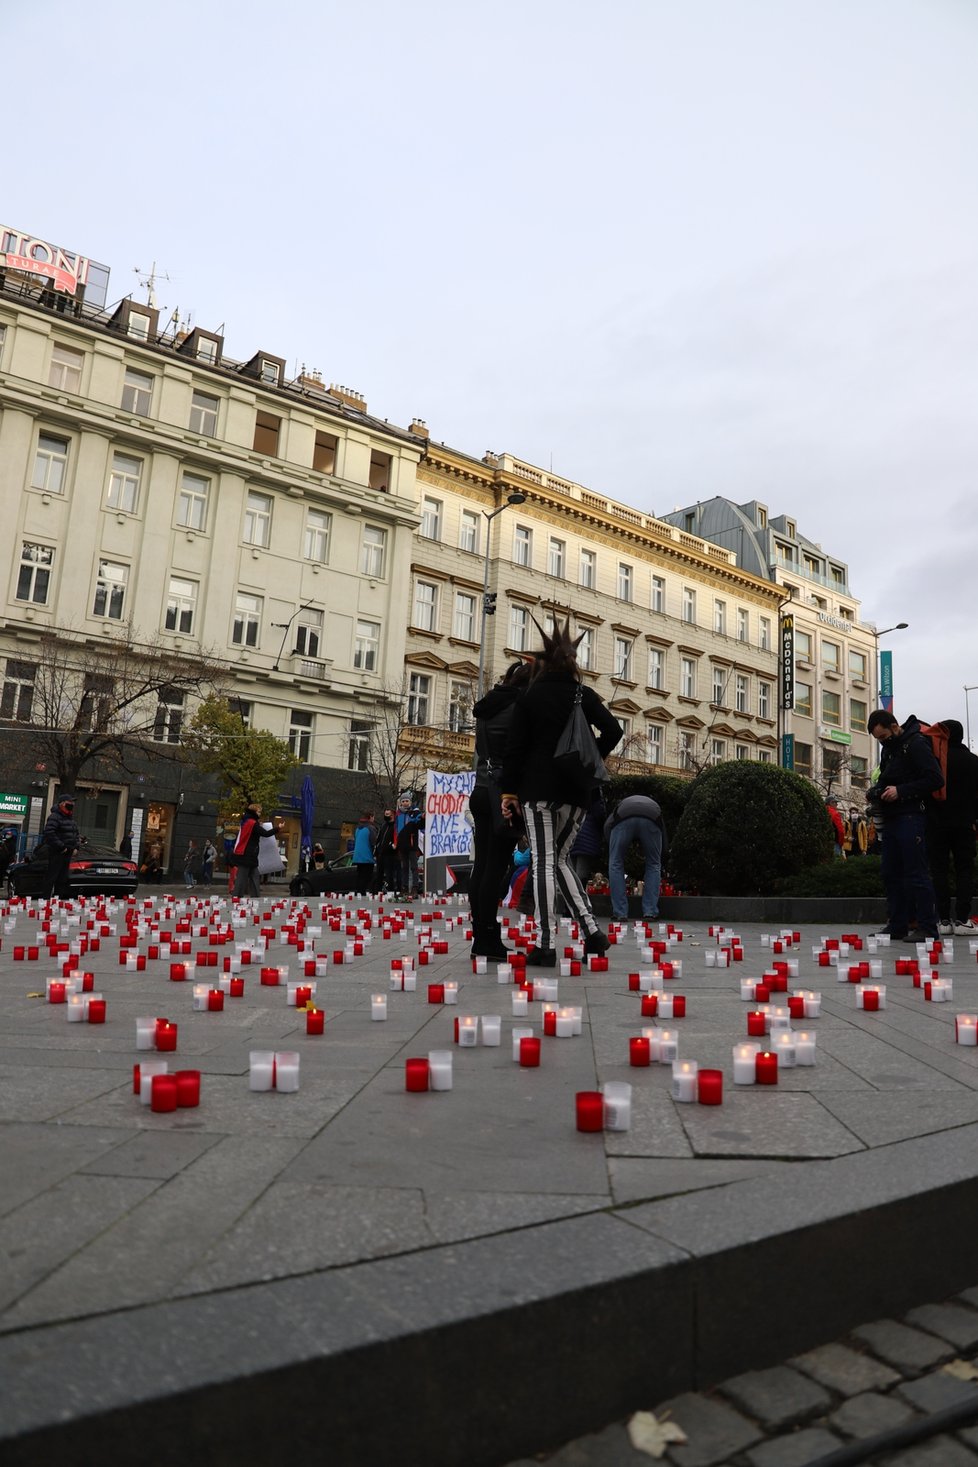 Na Václavském náměstí se sešli lidé, kteří protestovali proti vládním nařízením. (17.11. 2020)